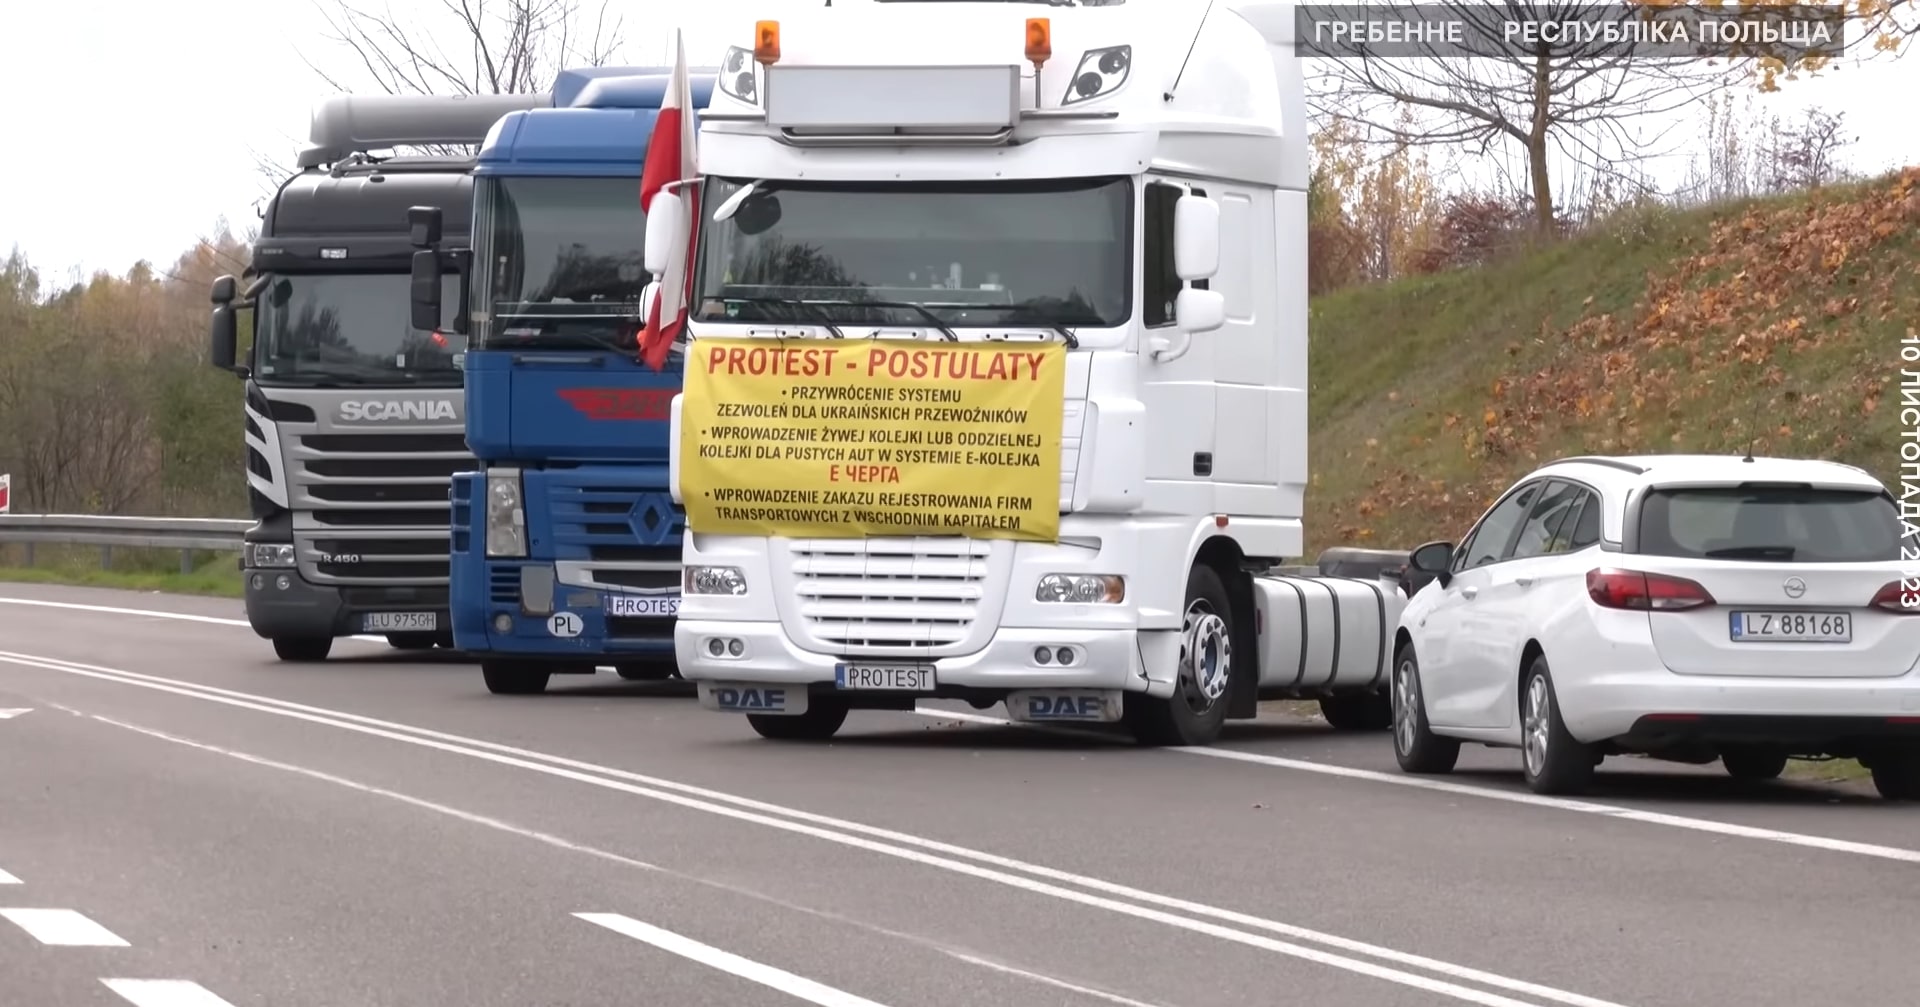 Bałtyccy dyplomaci wzywają Polskę do zakończenia blokady granicy z Ukrainą